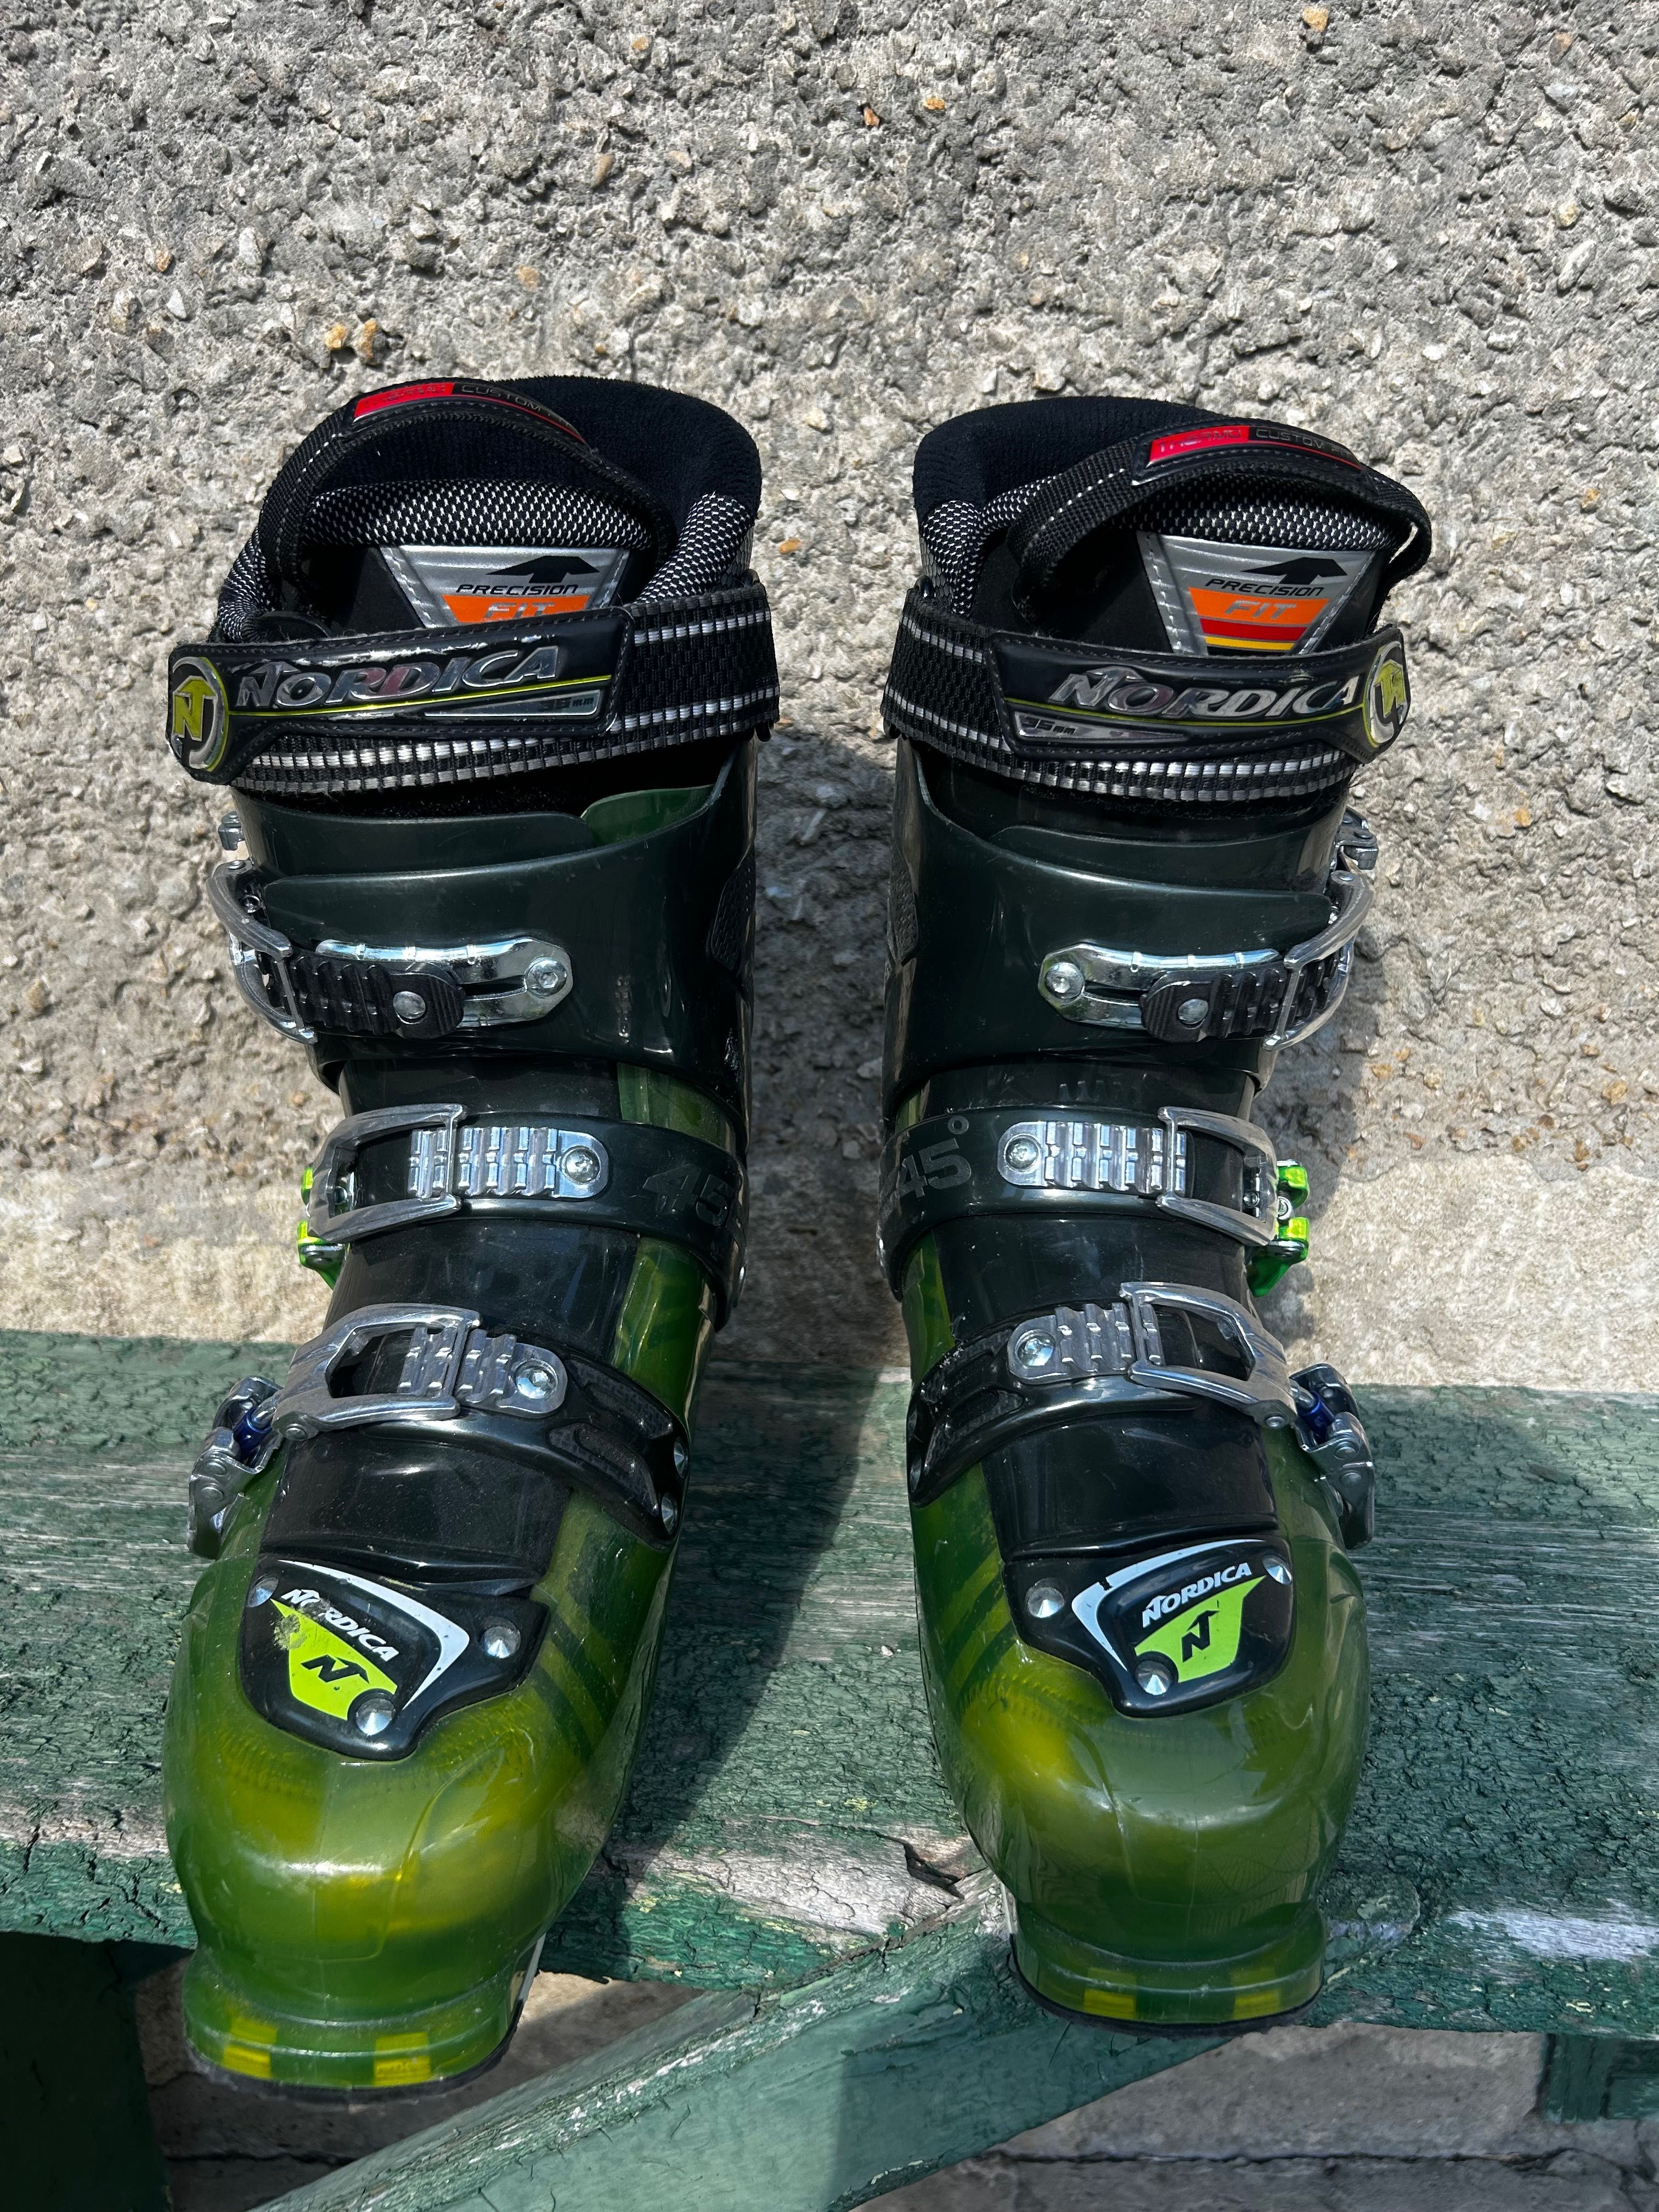 Ски,ски обувки, Atomic SL2 race, Nordica R2 ,Rossignol 110 S3 sensor